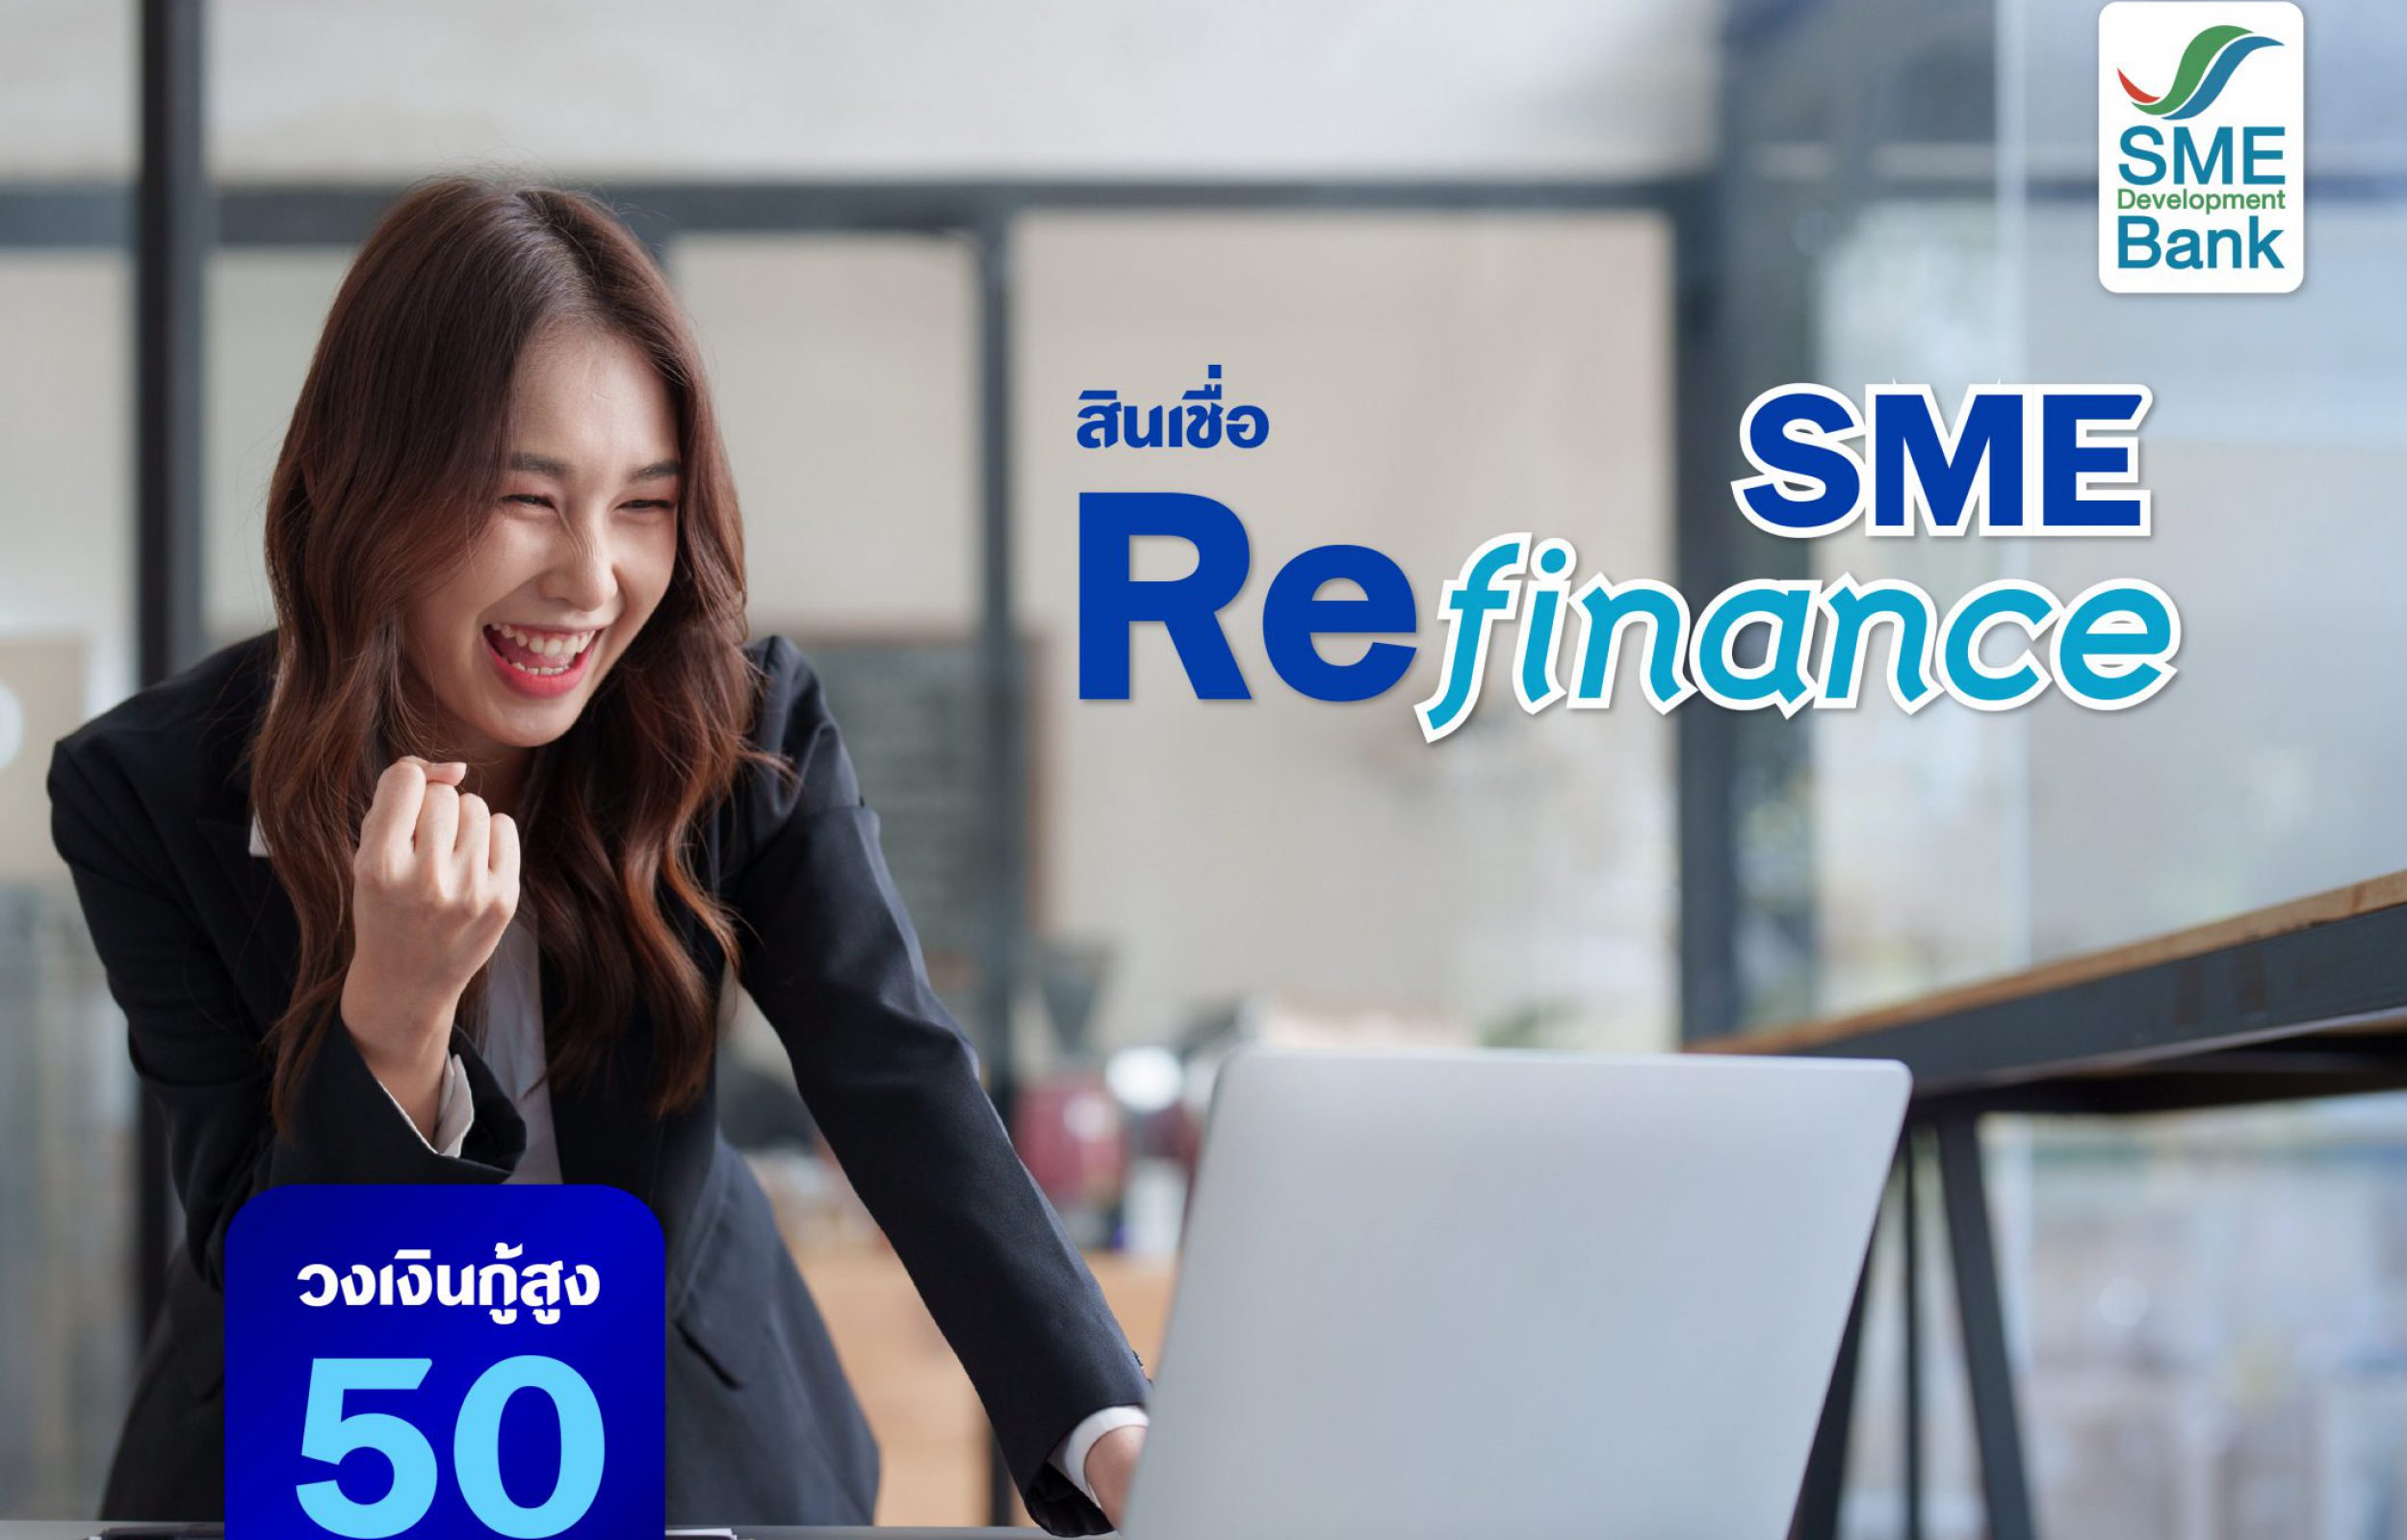 สินเชื่อ SME Refinance